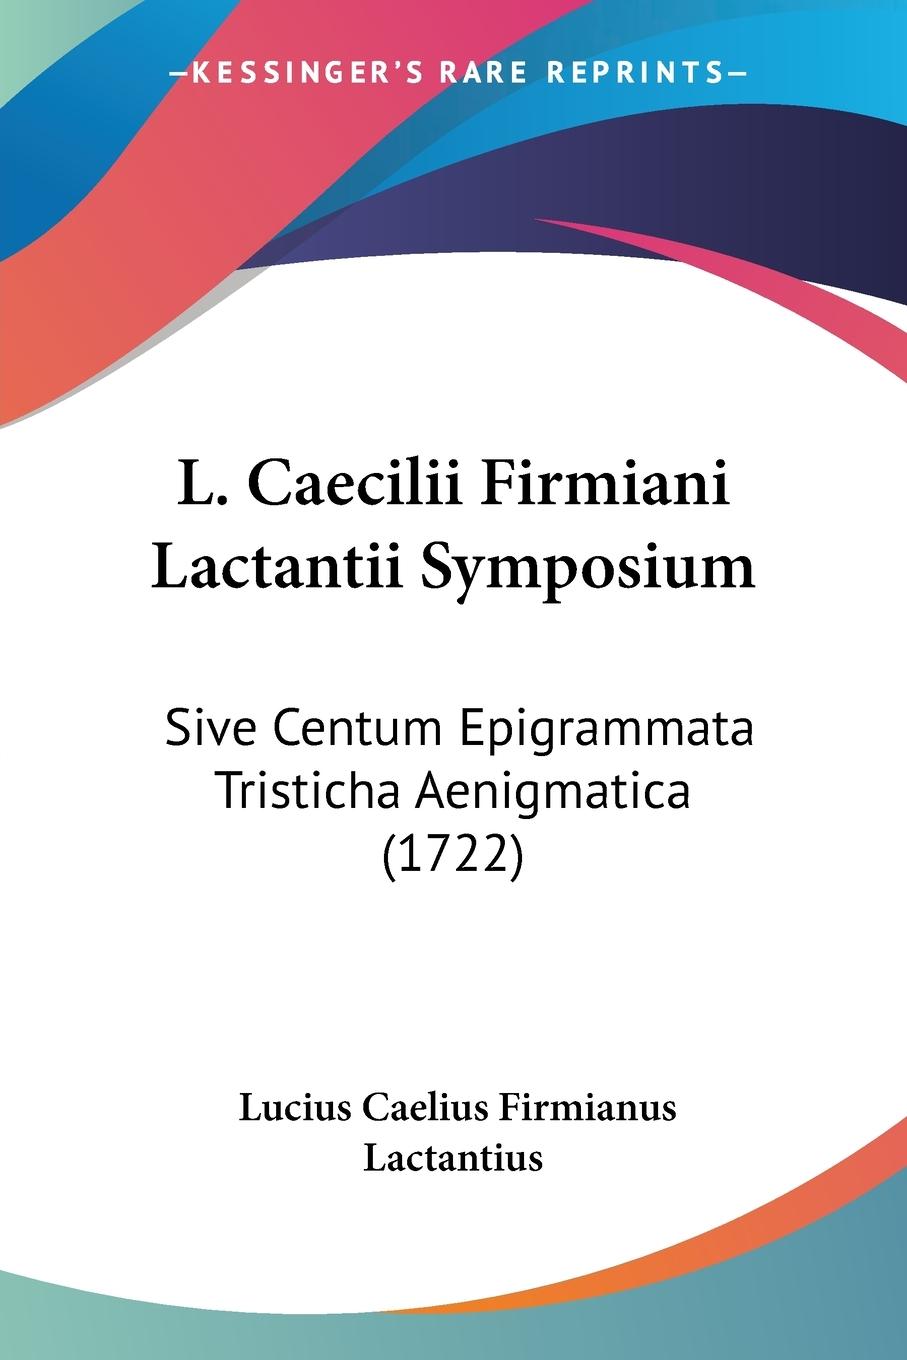 L. Caecilii Firmiani Lactantii Symposium - Lactantius, Lucius Caelius Firmianus